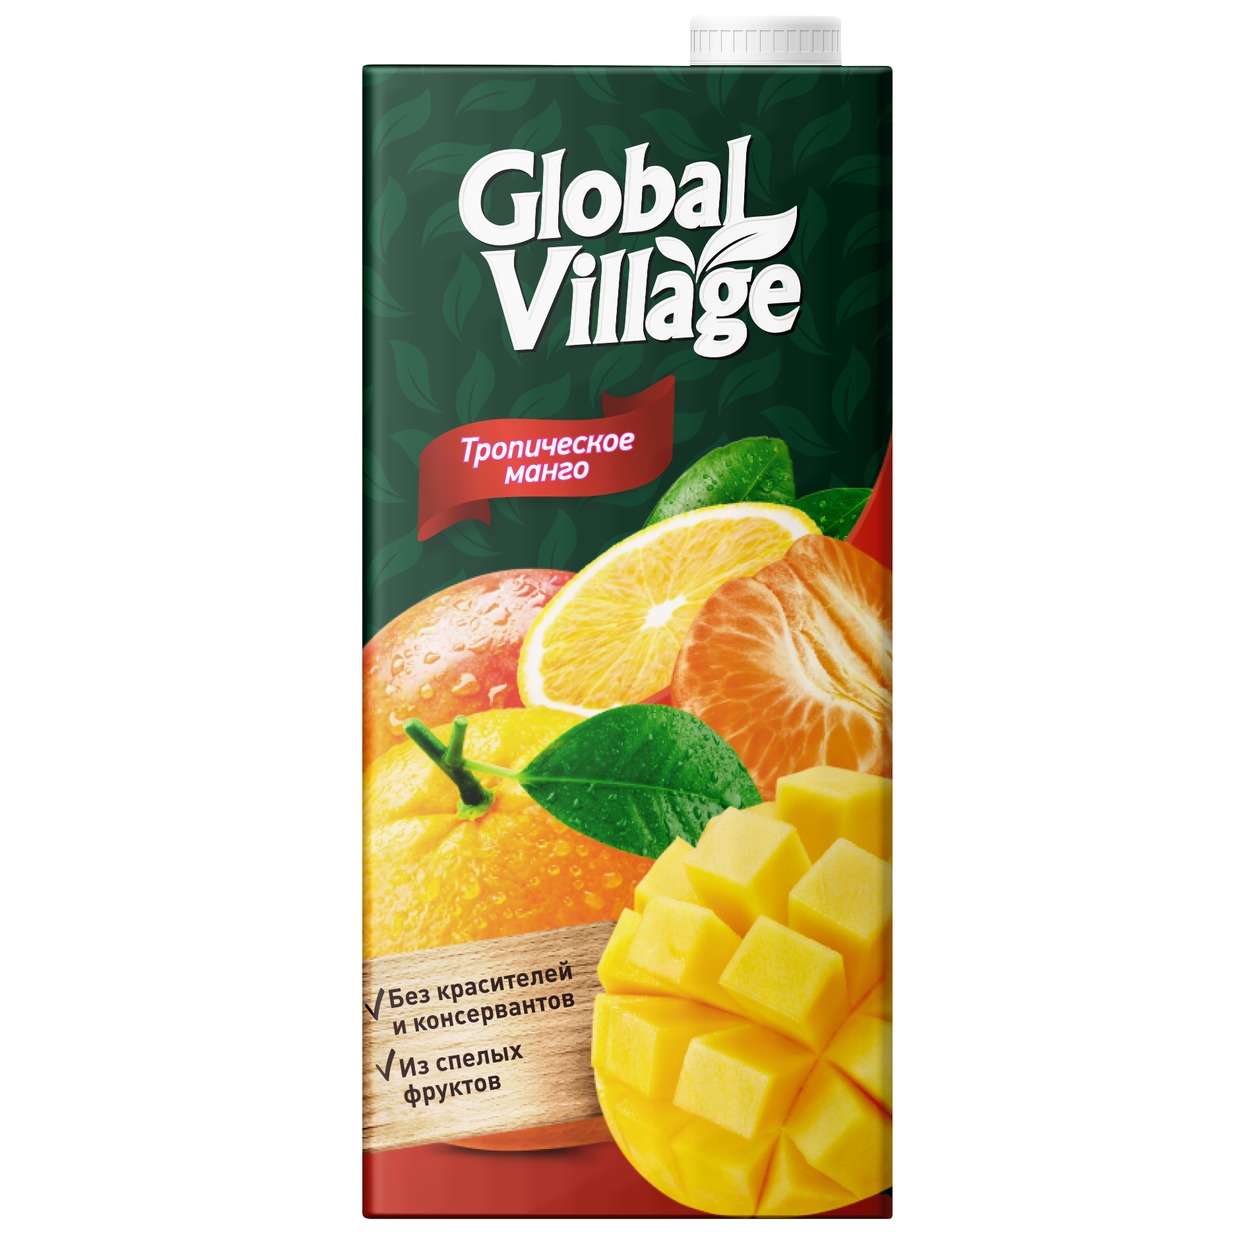 GLOBAL VILLAGE Сокосодержащий напиток из апельсинов, манго и мандаринов, 0,95л